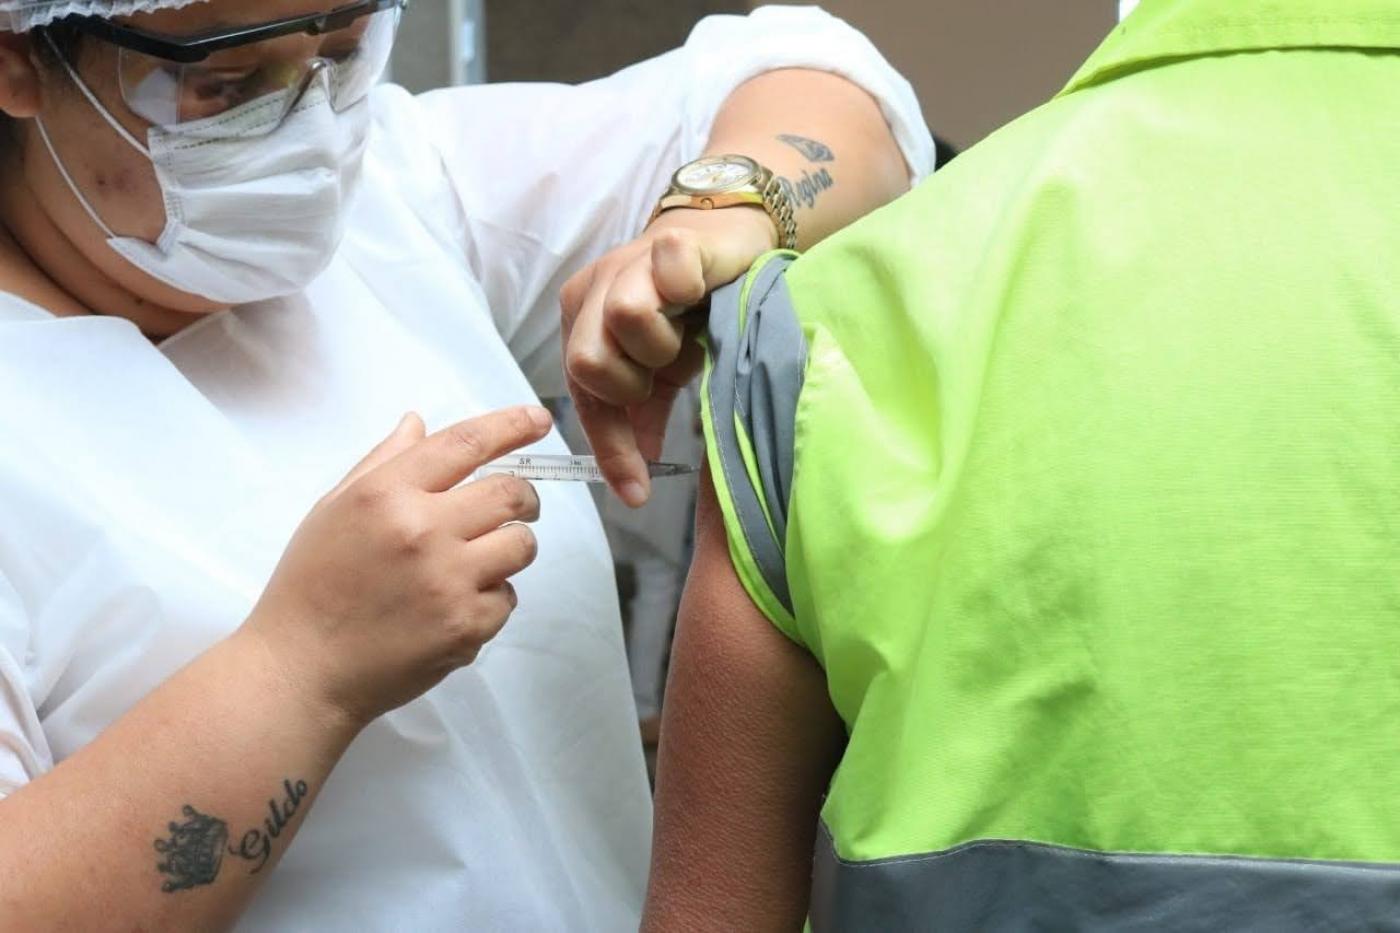 mulher vacina homem que usa uniforme com faixa reflexiva. #paratodosverem